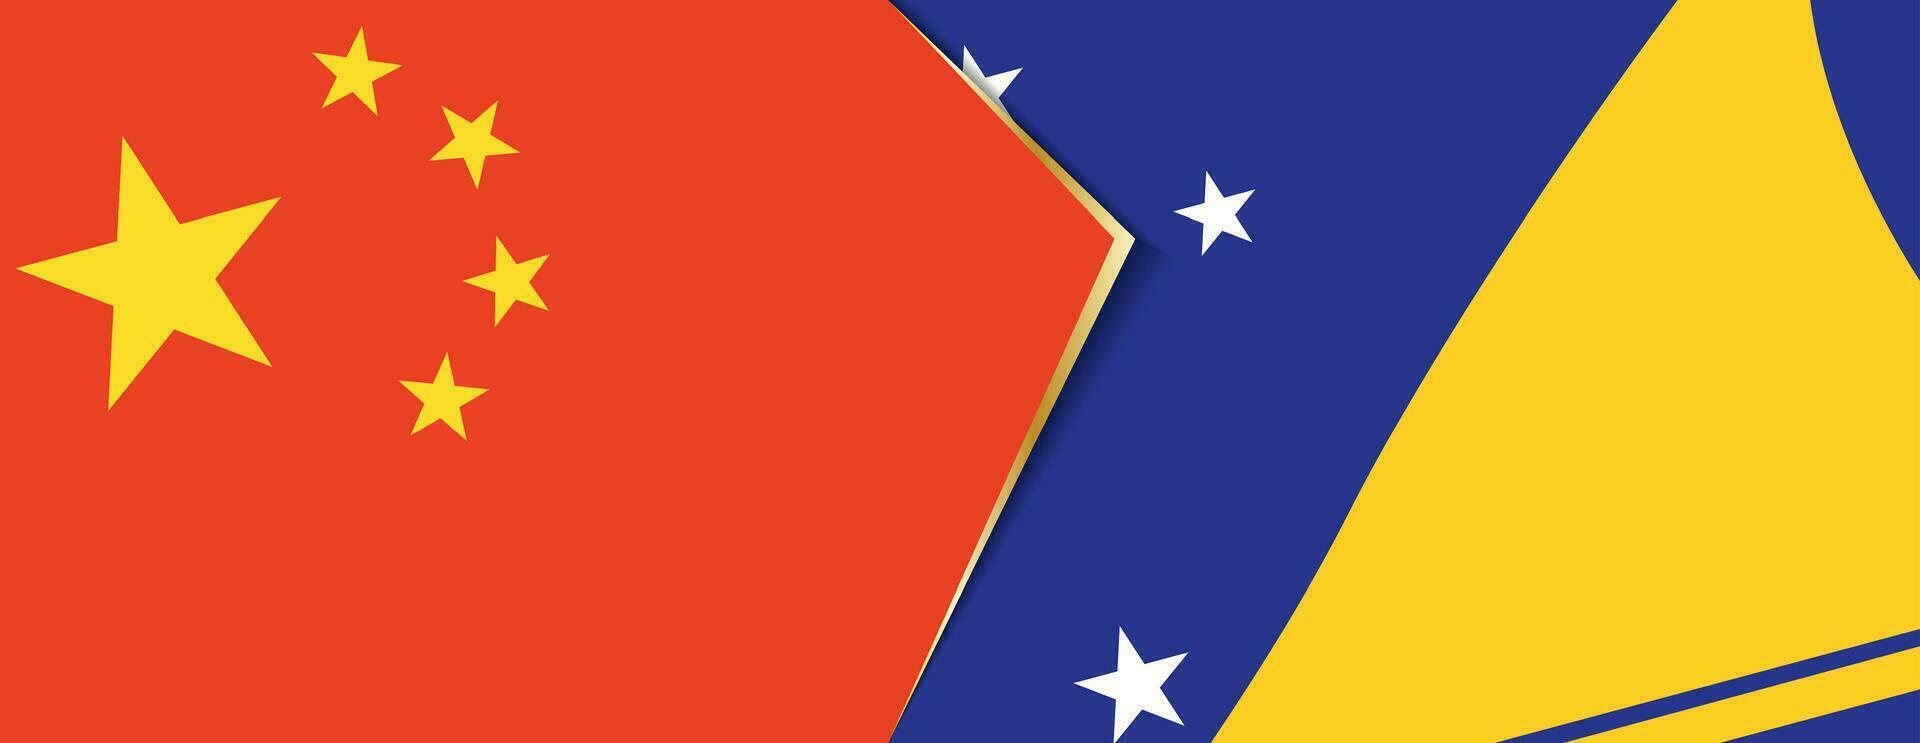 China e Tokelau bandeiras, dois vetor bandeiras.